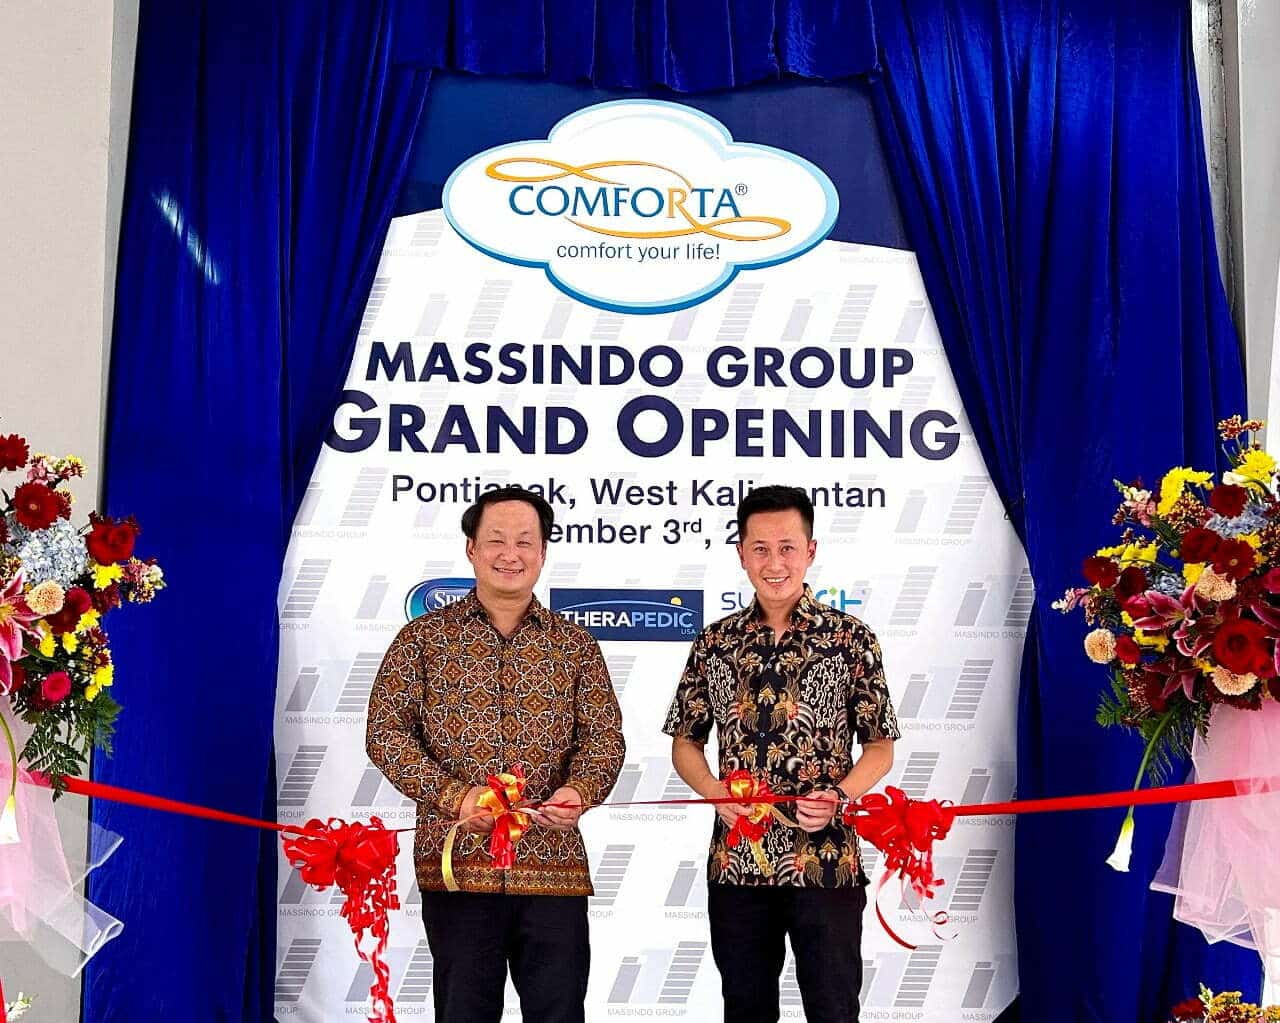 Produsen COMFORTA Spring Bed, Massindo Group Ekspansi ke Kalimantan Barat dengan Optimis 1